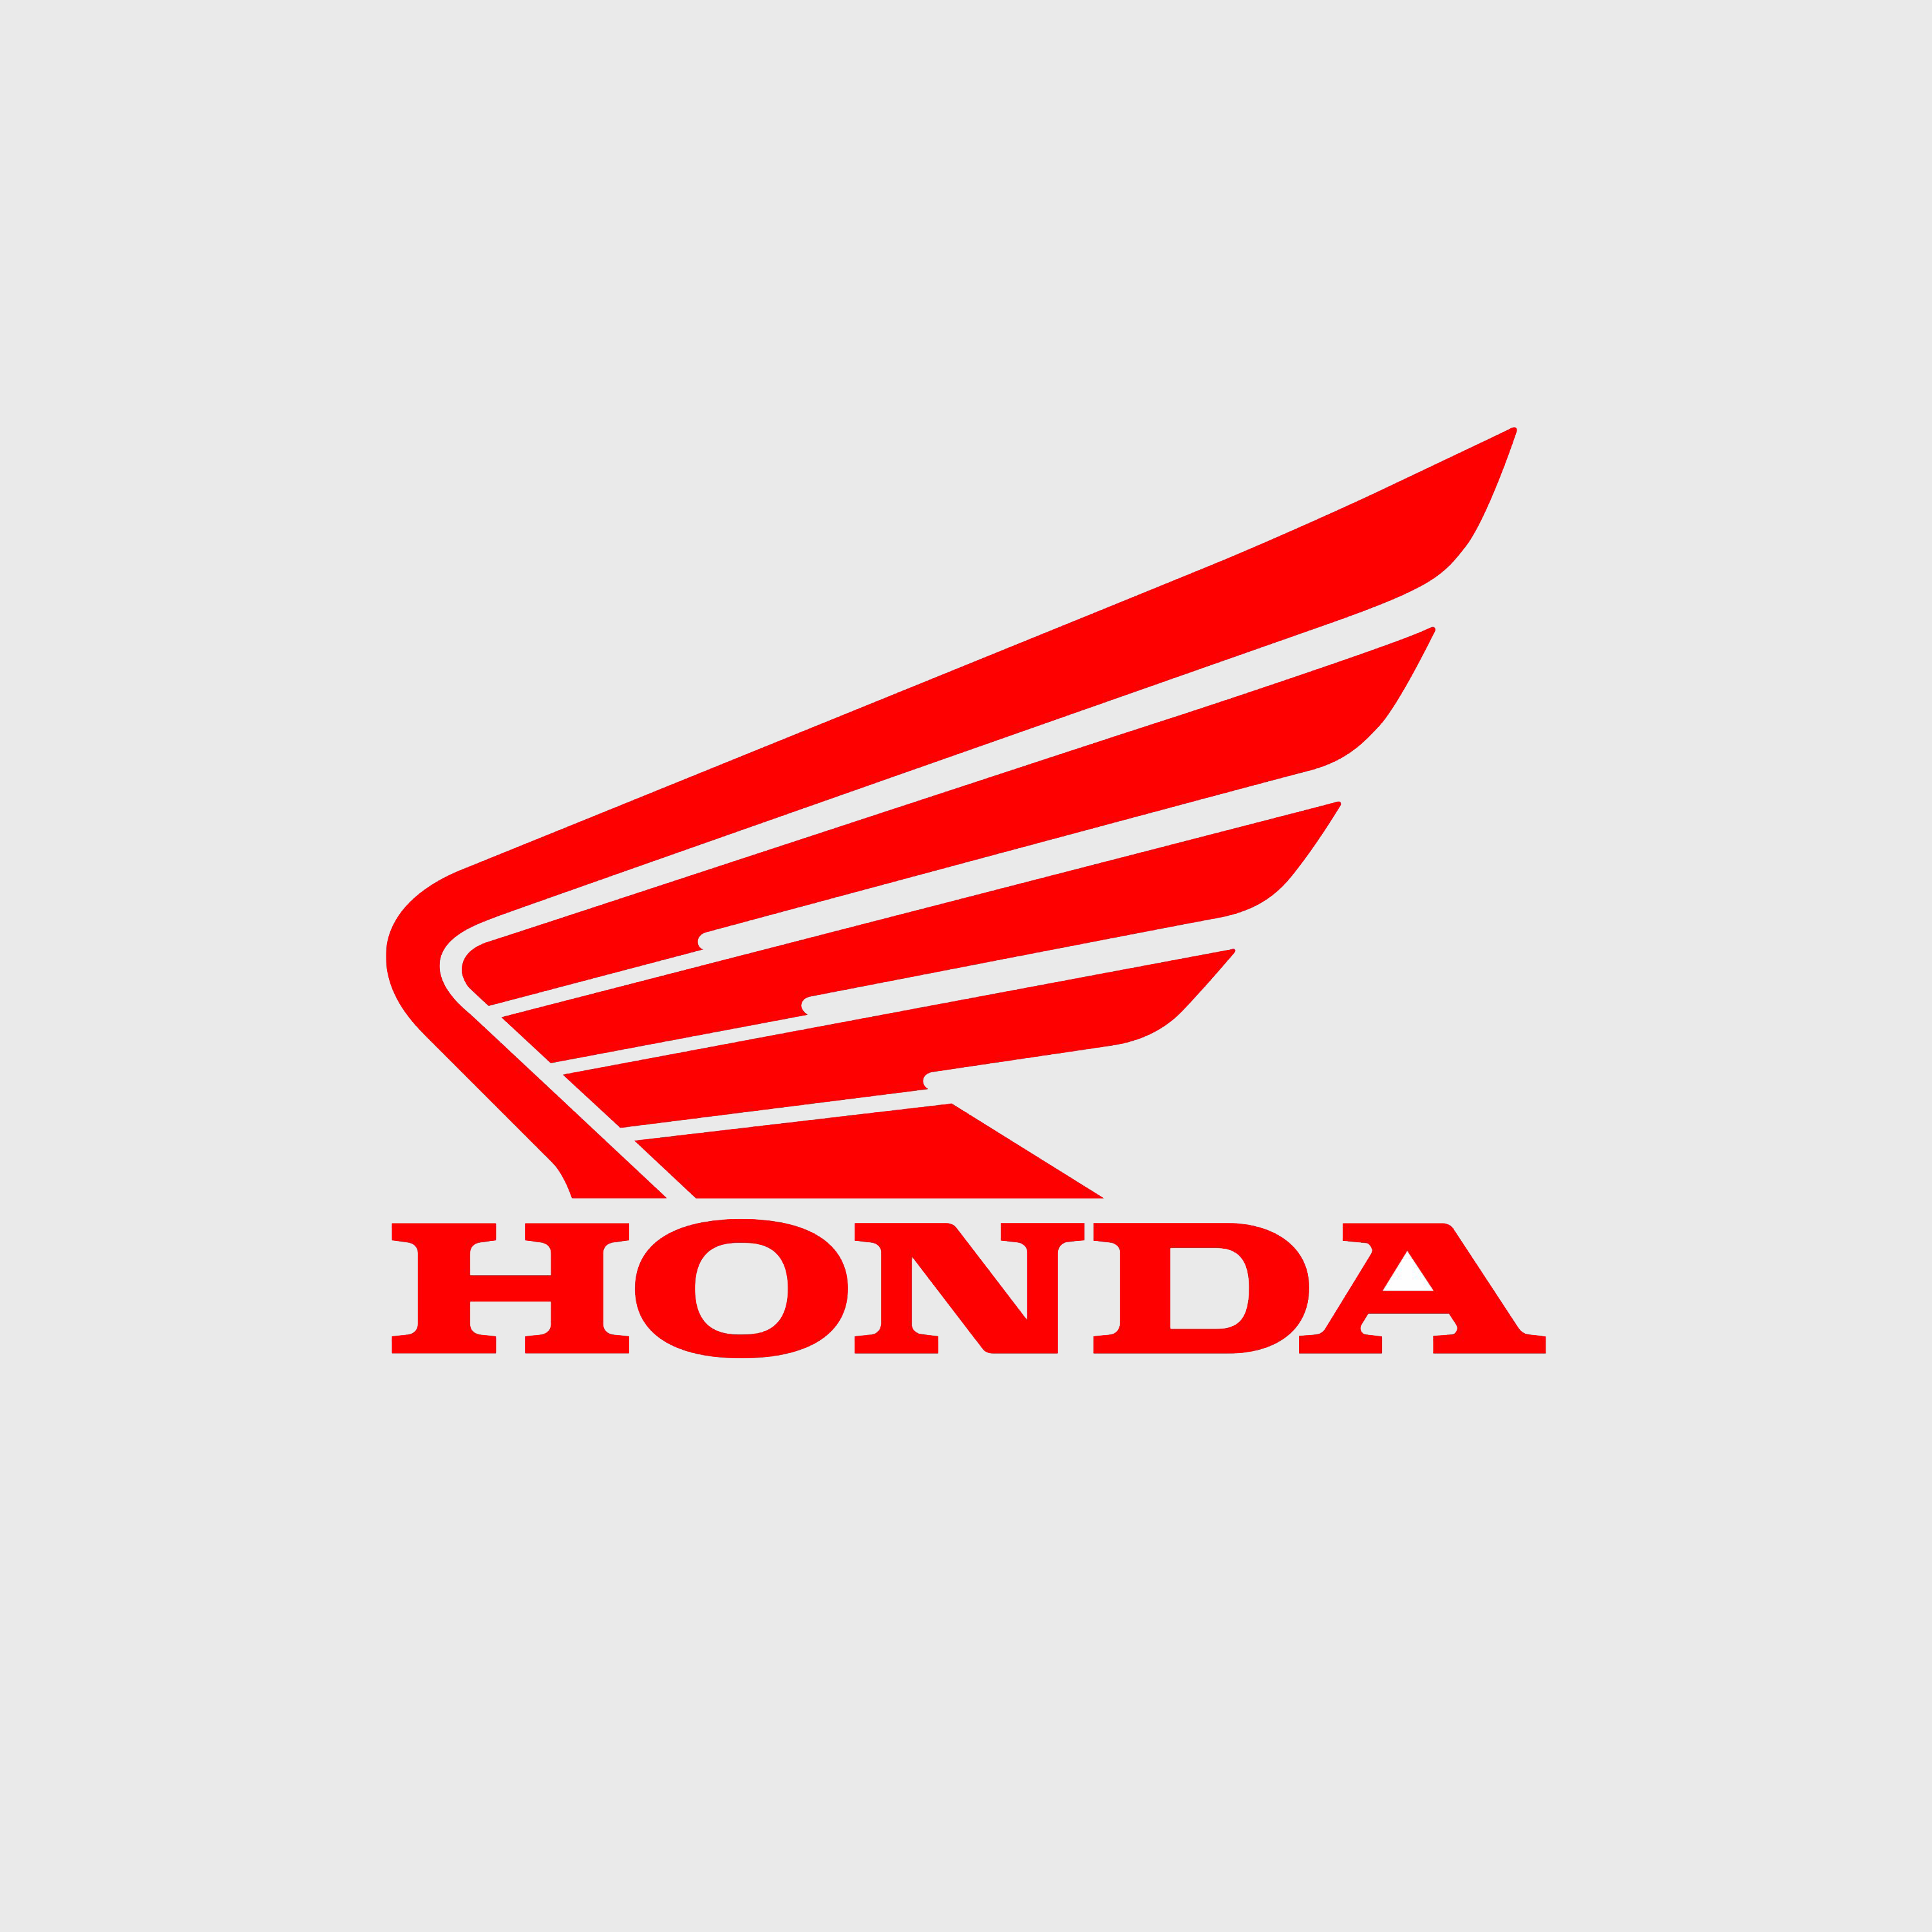 Honda 3F – Factory Tour and CSR